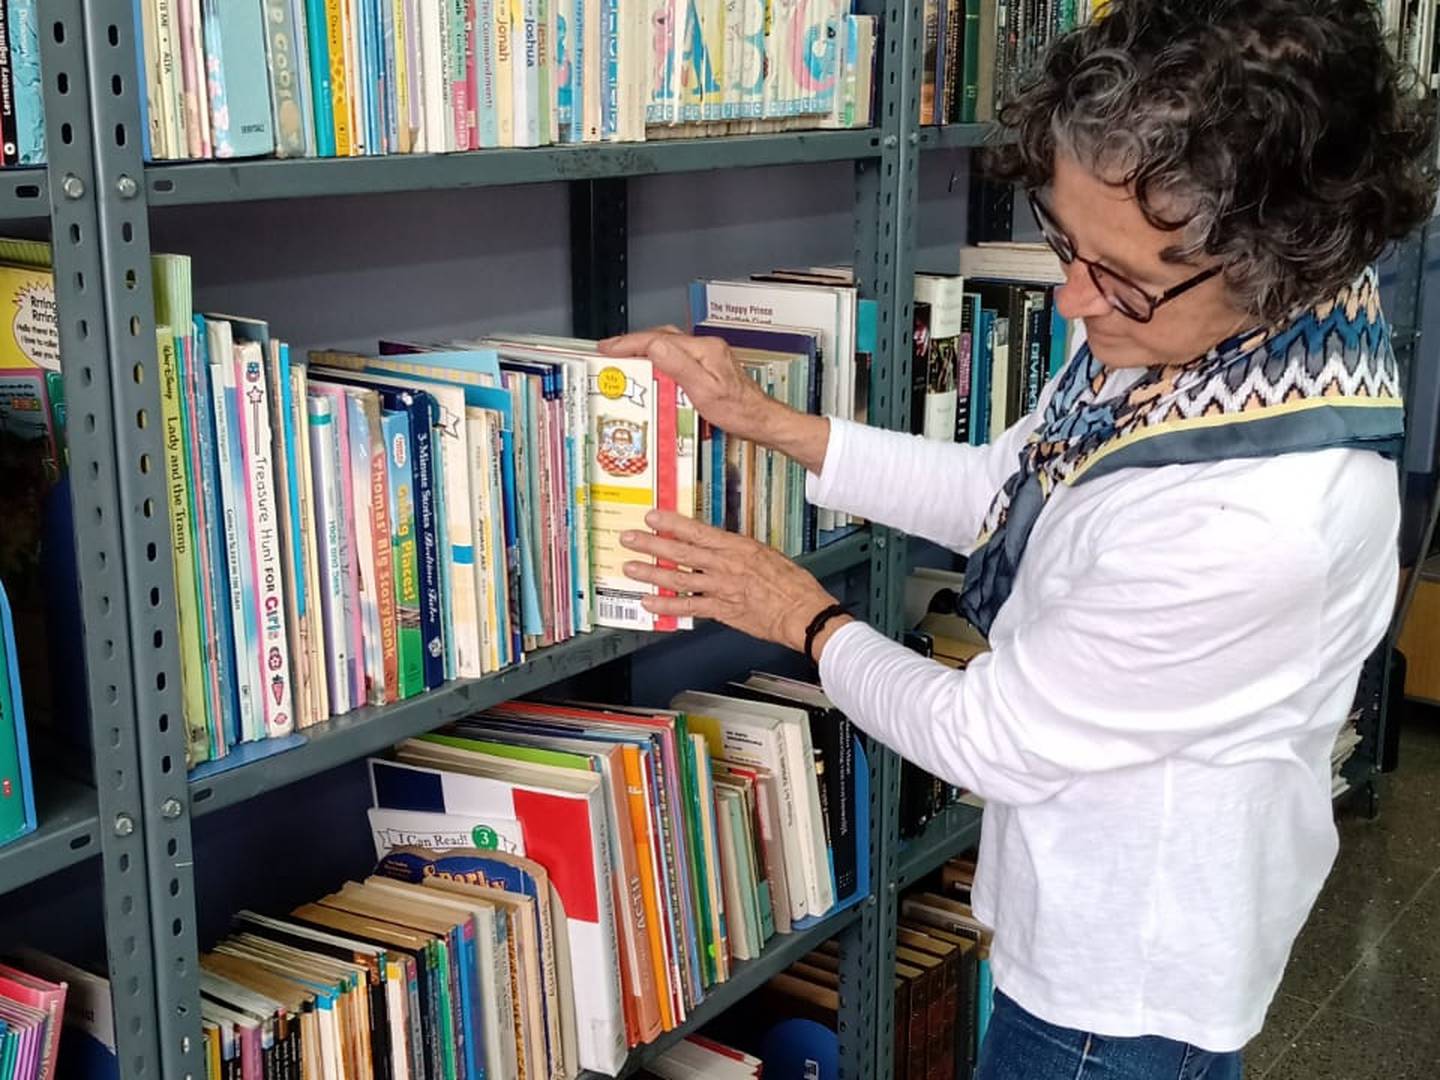 Voluntarios. Soledad Naranjo, voluntaria Ageco en biblioteca.